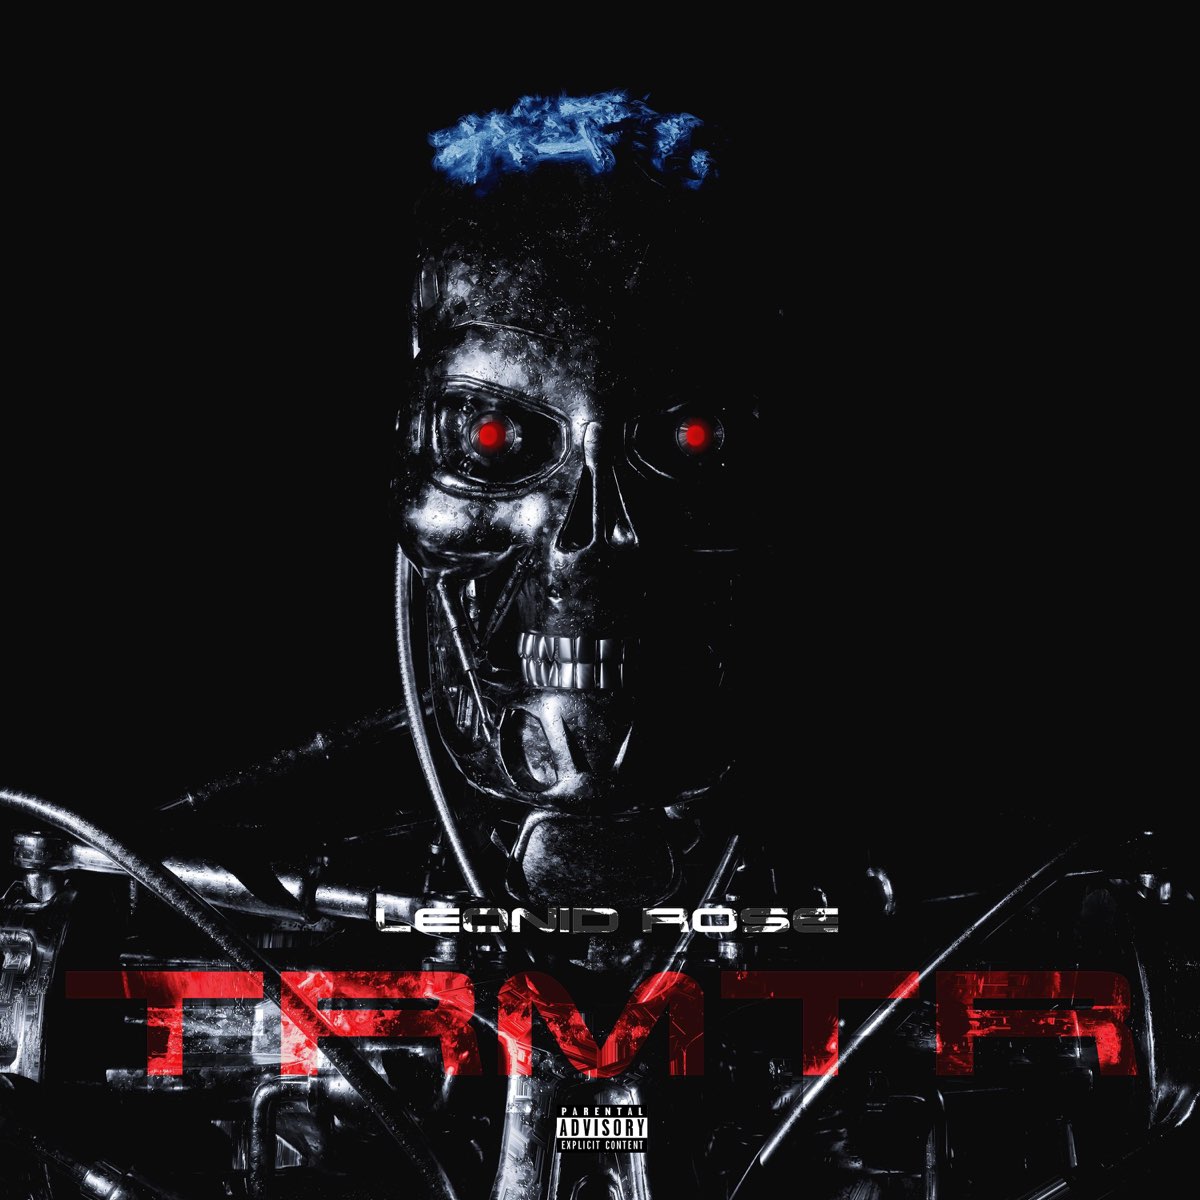 Terminator - Single by Leonid Rose on Apple Music